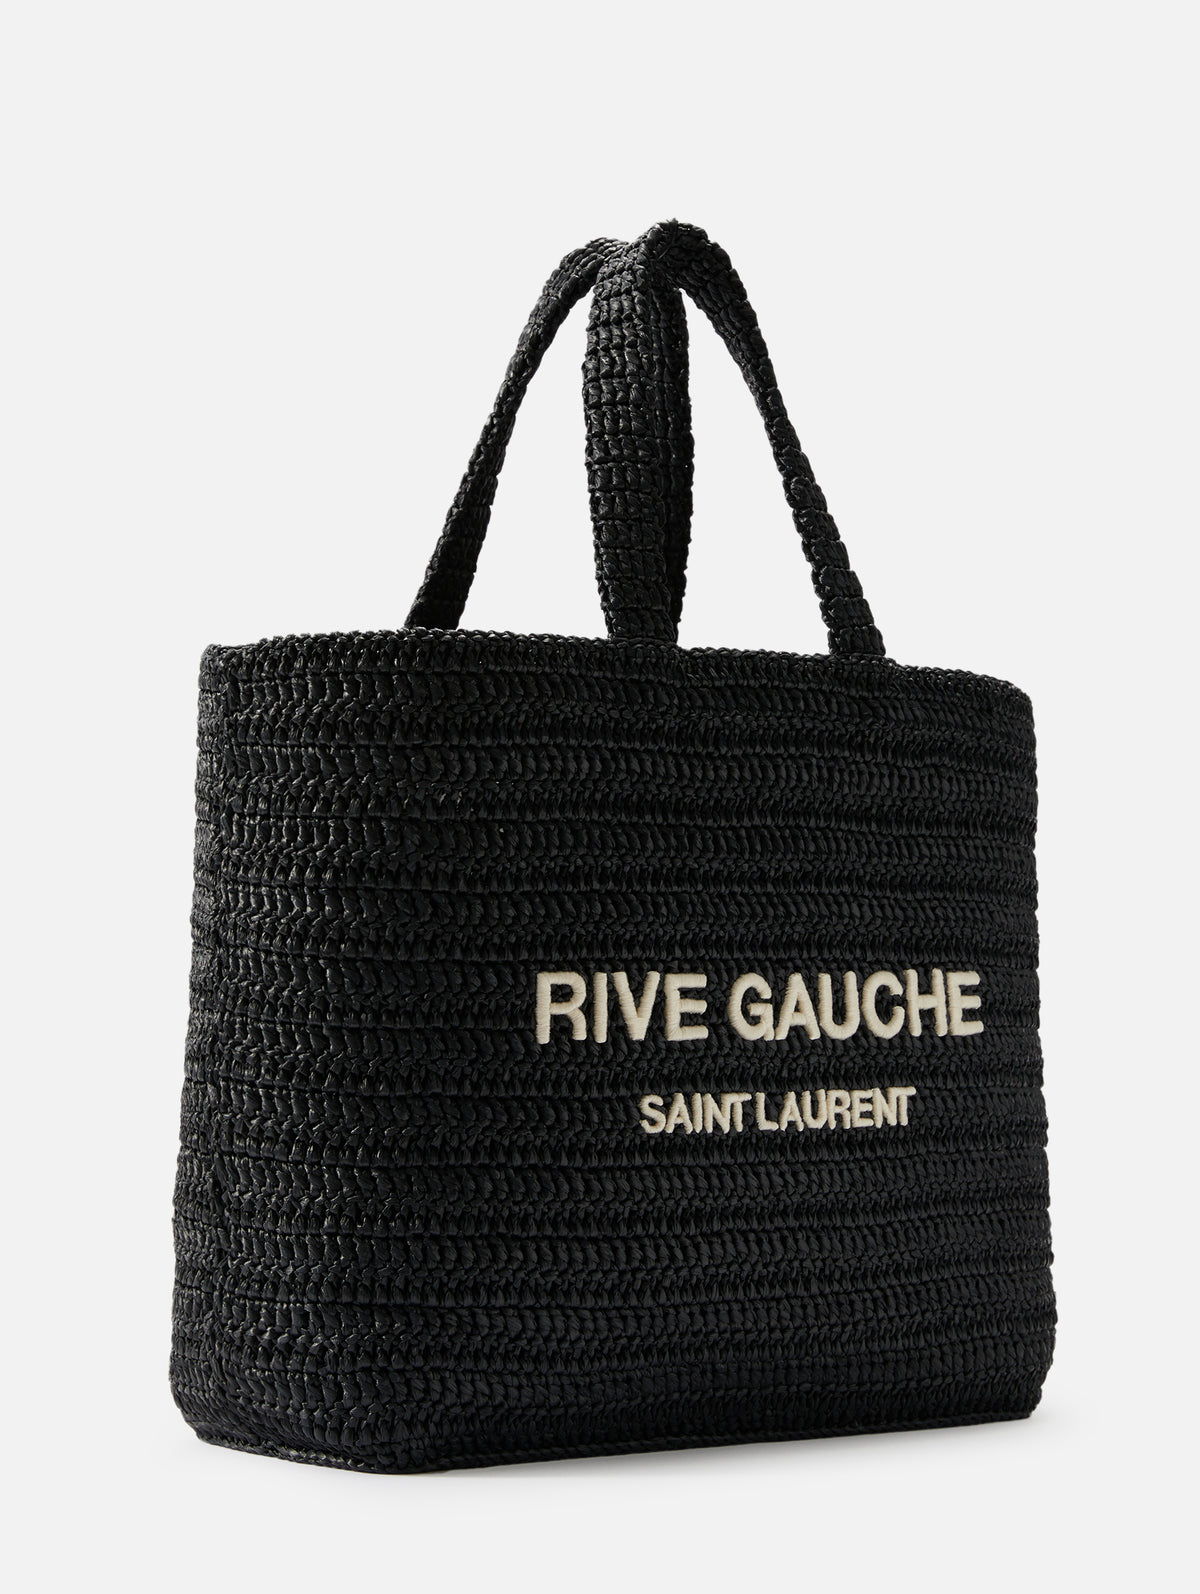 Saint Laurent Rive Gauche Large Tote